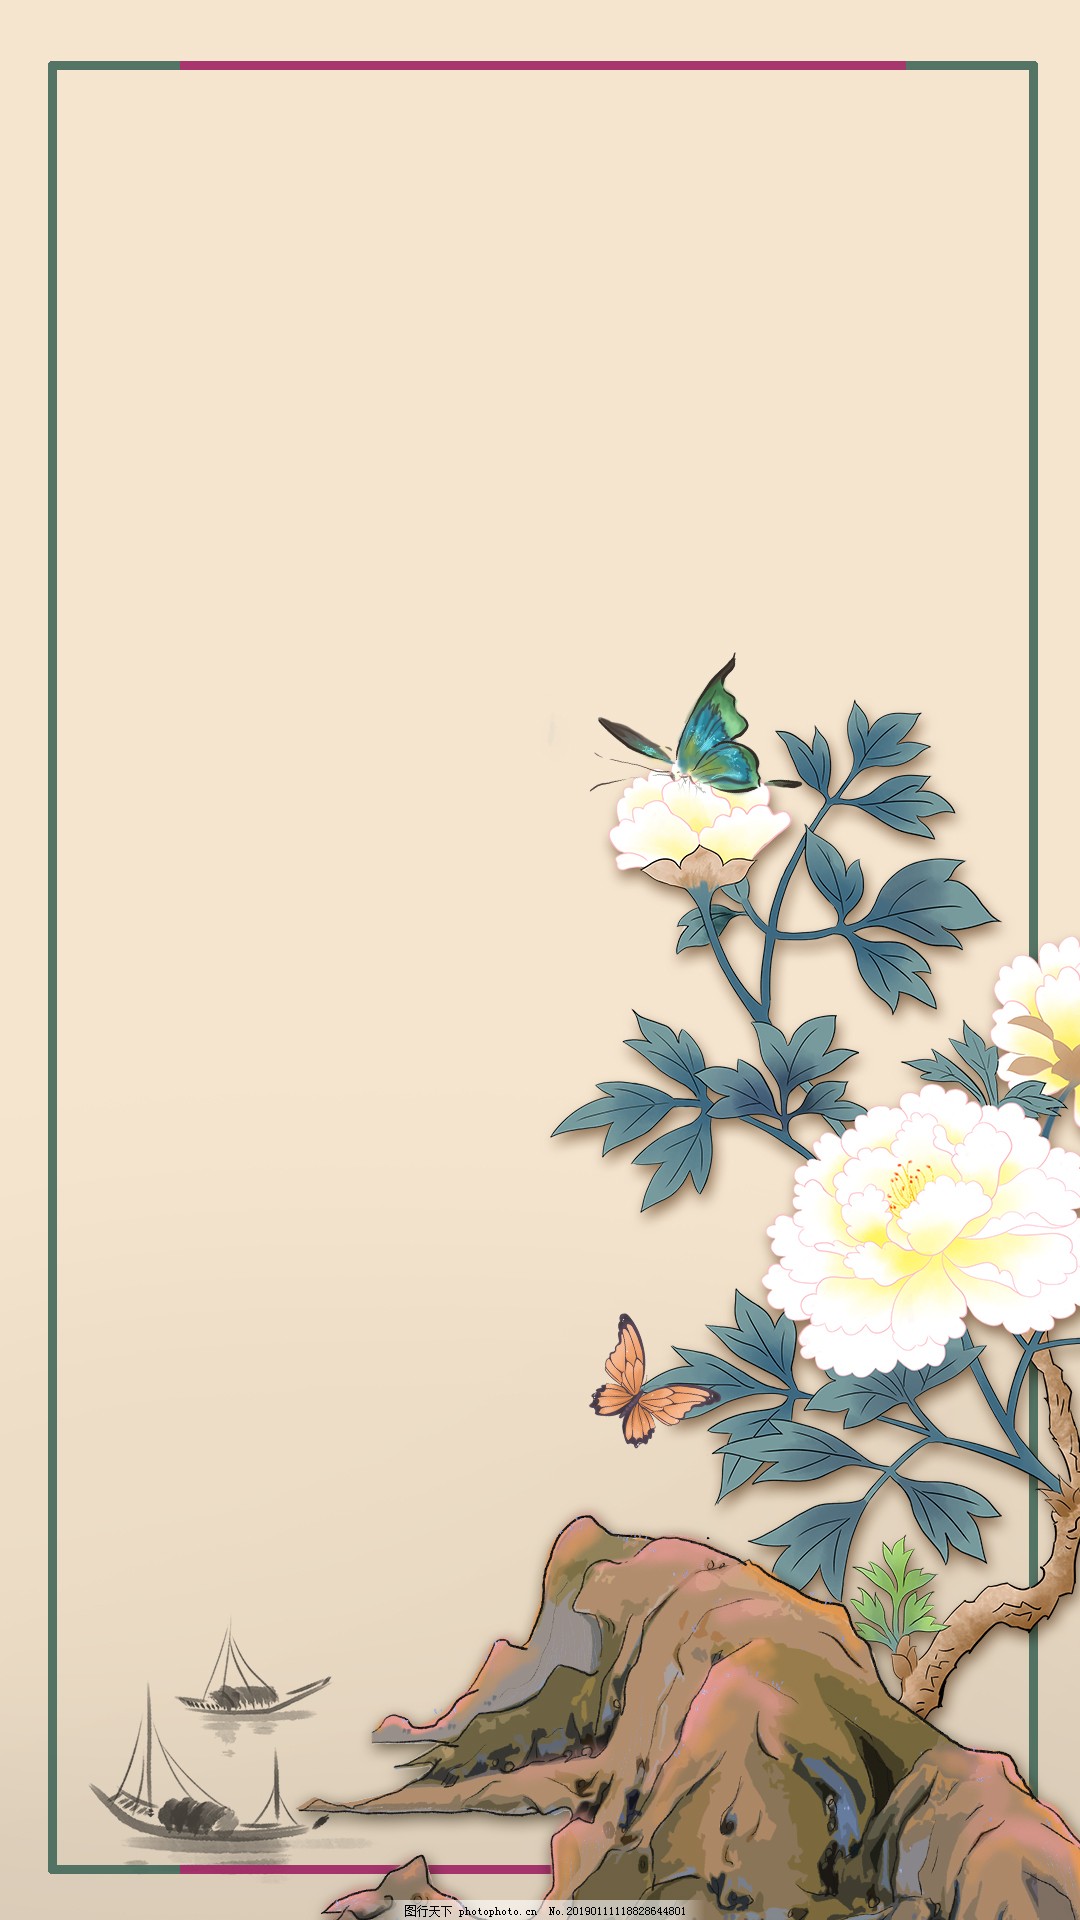 【1280x1024】清新淡雅的花桌面图片 - 彼岸桌面